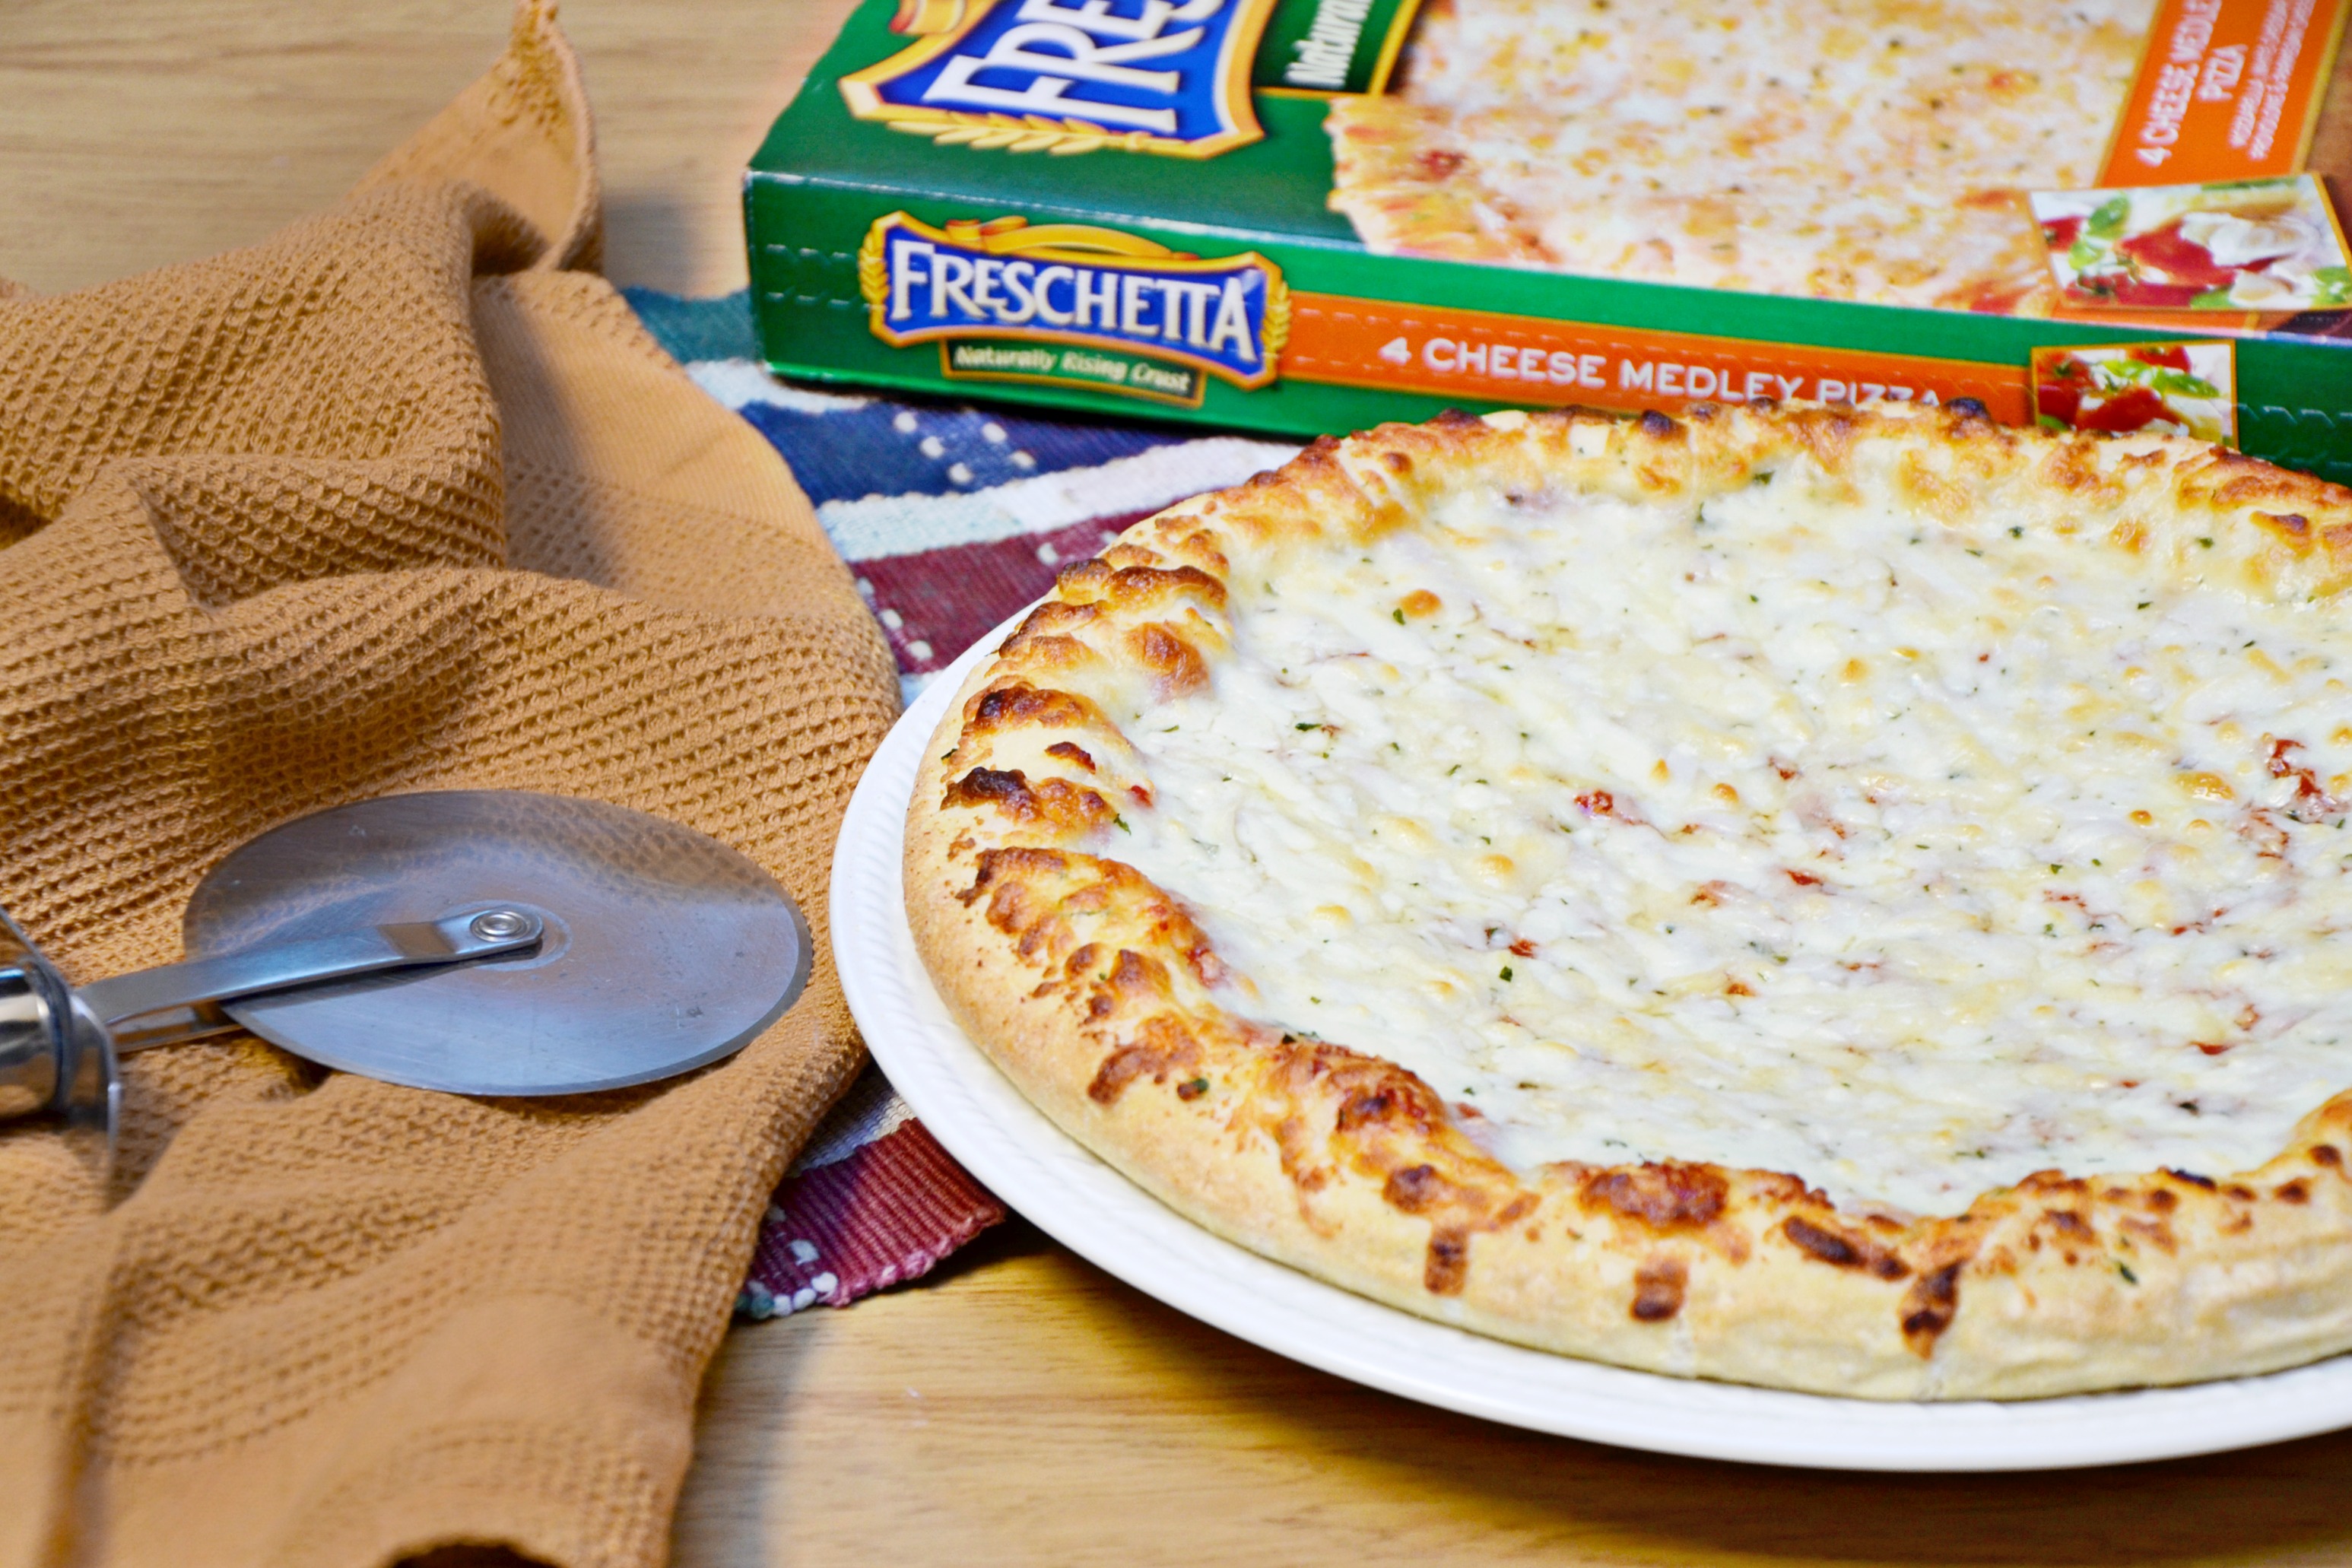 Freschetta 4 cheese medley pizza